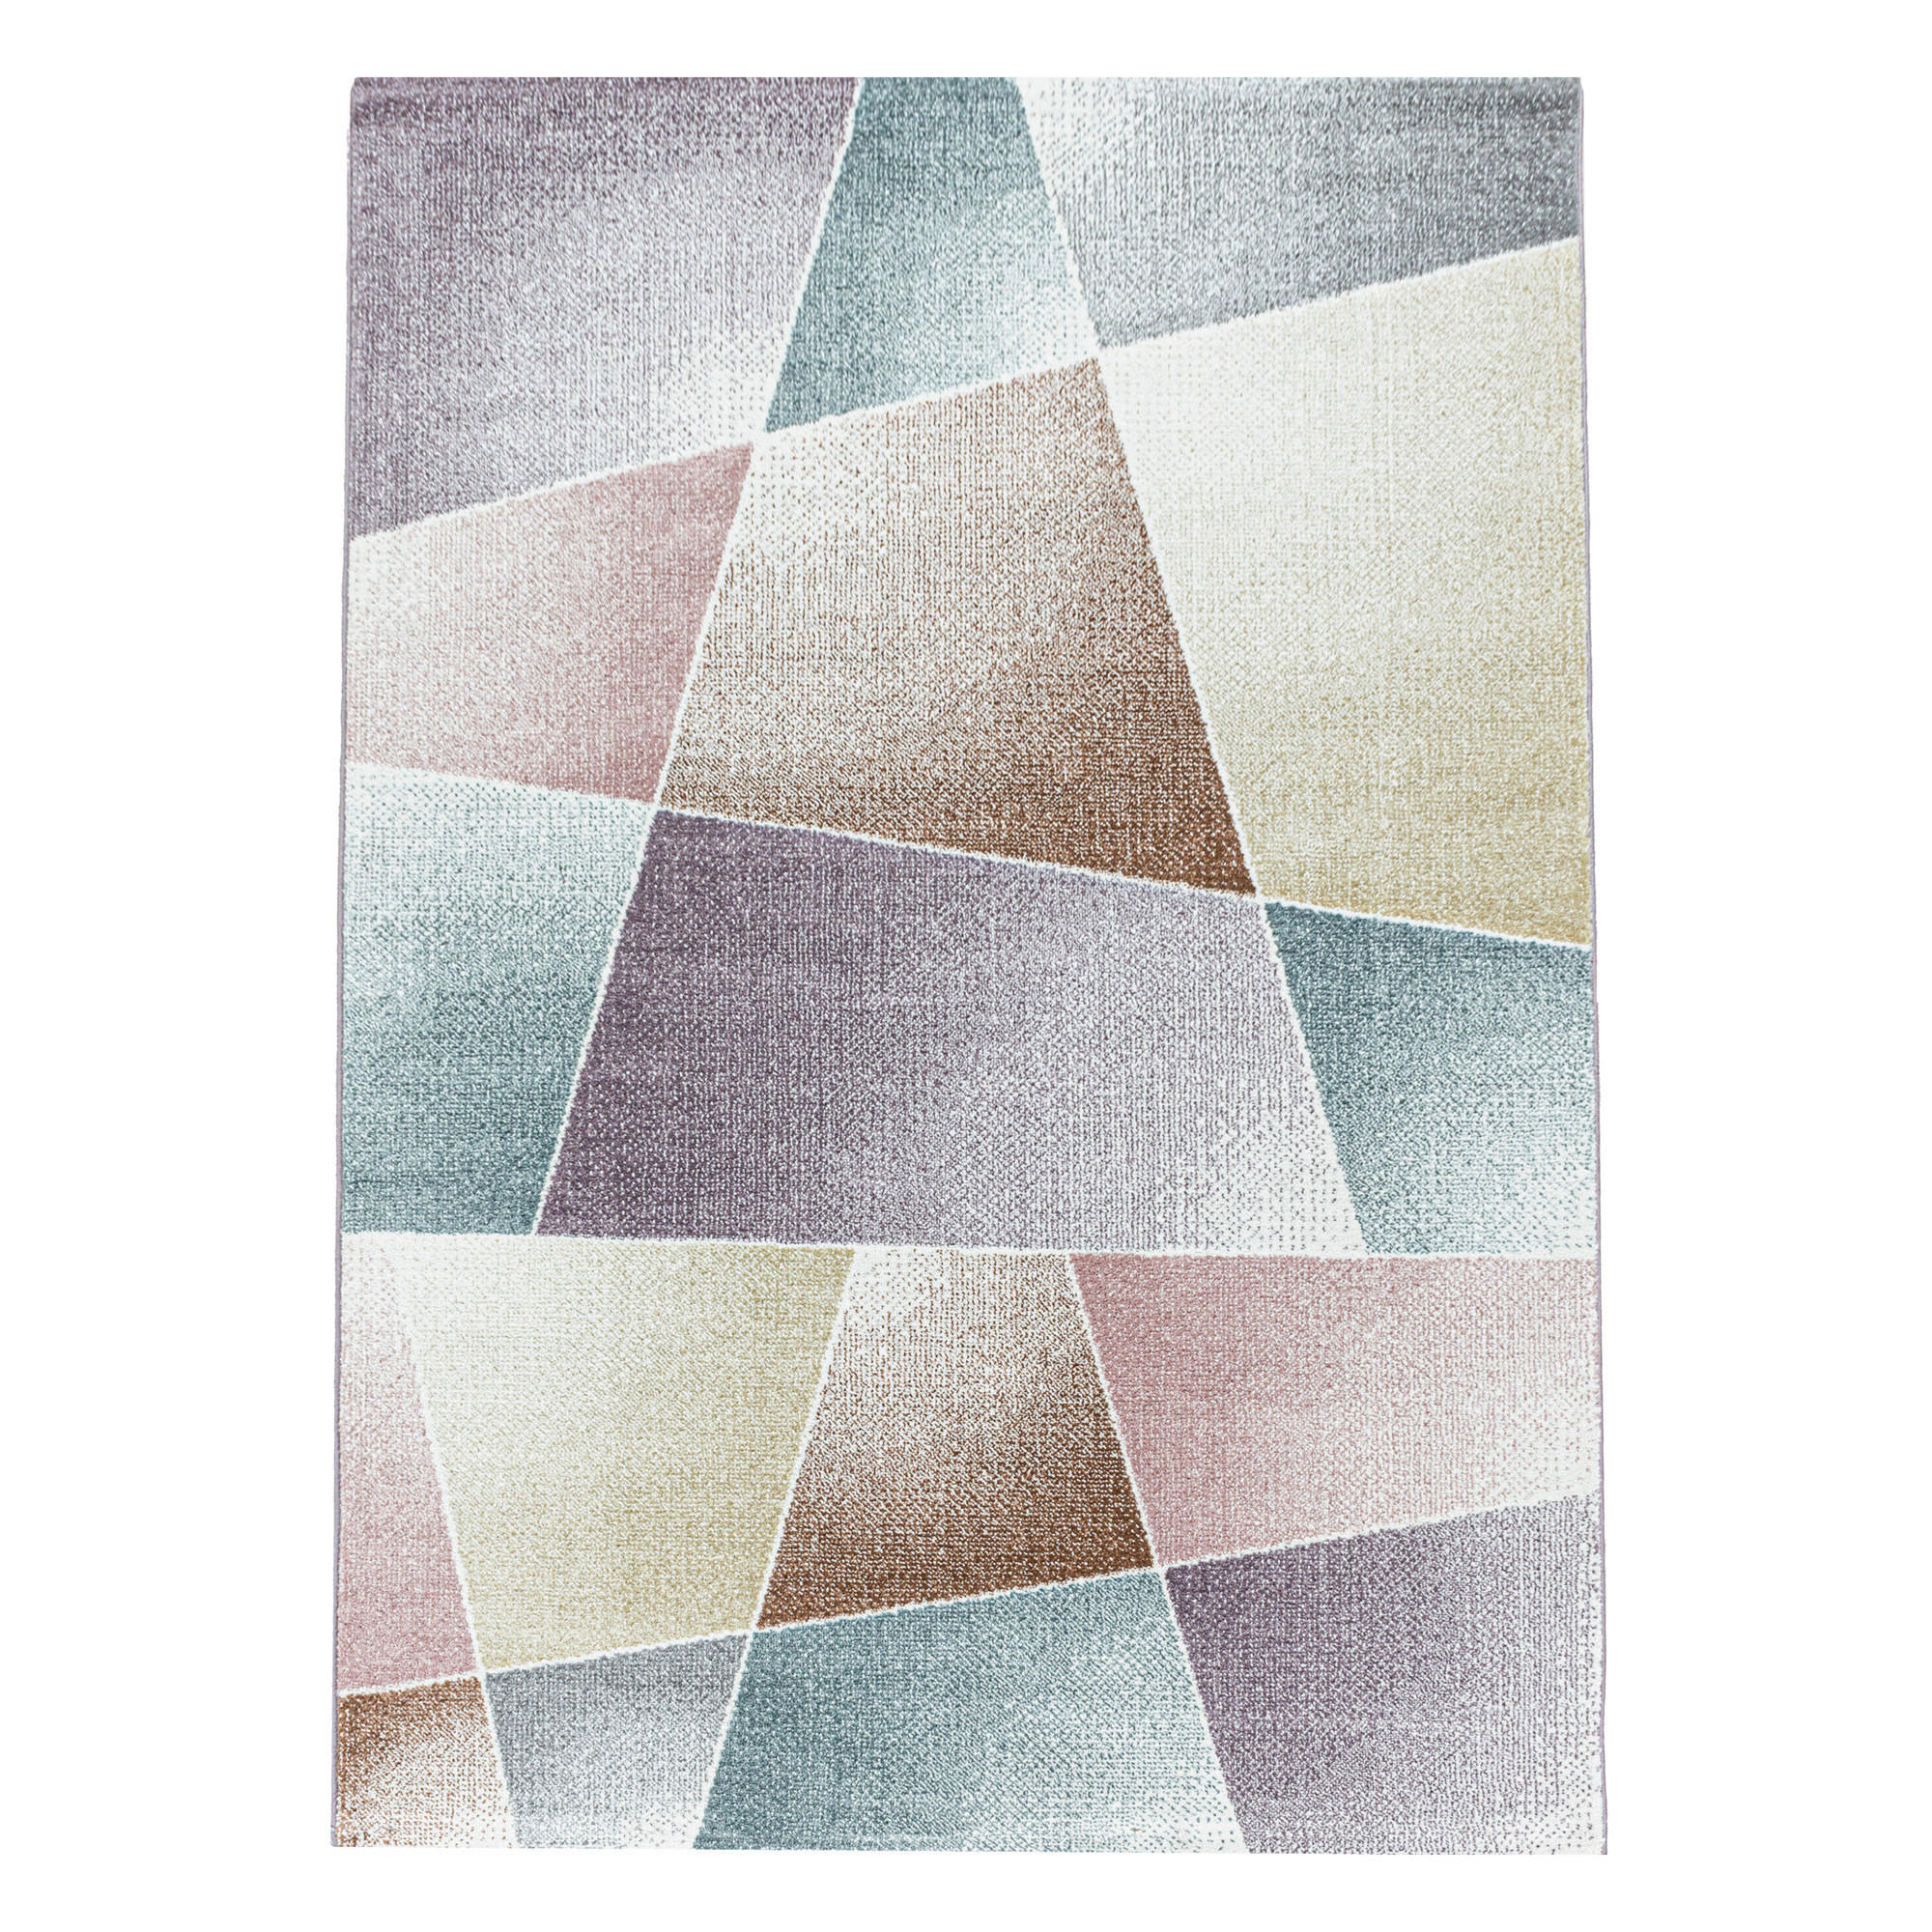 HOCHFLORTEPPICH  80/150 cm  gewebt  Multicolor   - Multicolor, Basics, Textil (80/150cm) - Novel